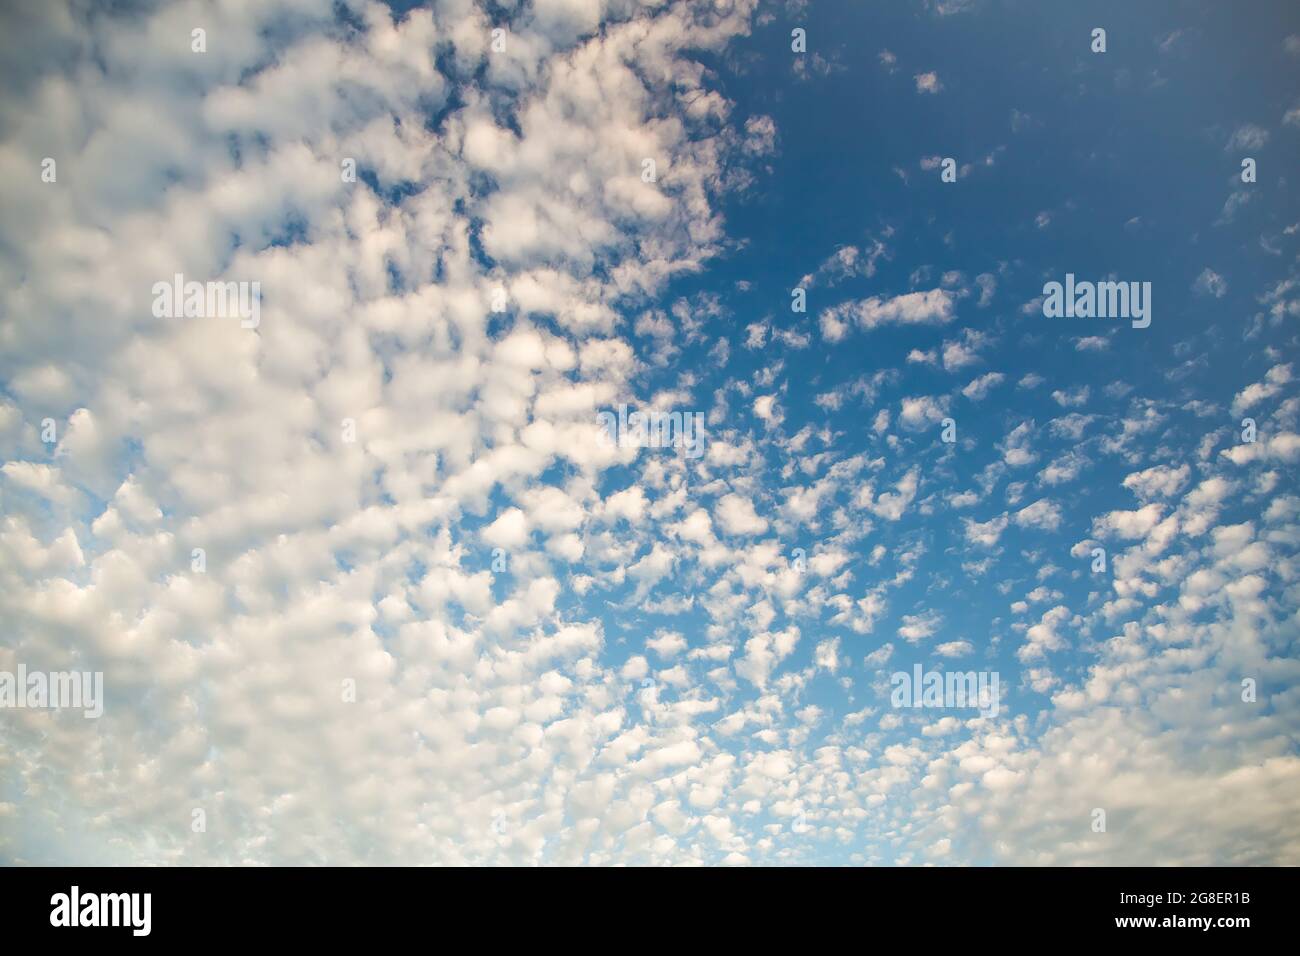 Schöner blauer Himmel mit weißen Zirruswolken. Himmelspanorama für Bildschirmschoner, Postkarten, Kalender, Präsentationen. Tiefer Punkt bei Weitwinkel. Warme Frühlings- oder Sommerabende. Stockfoto